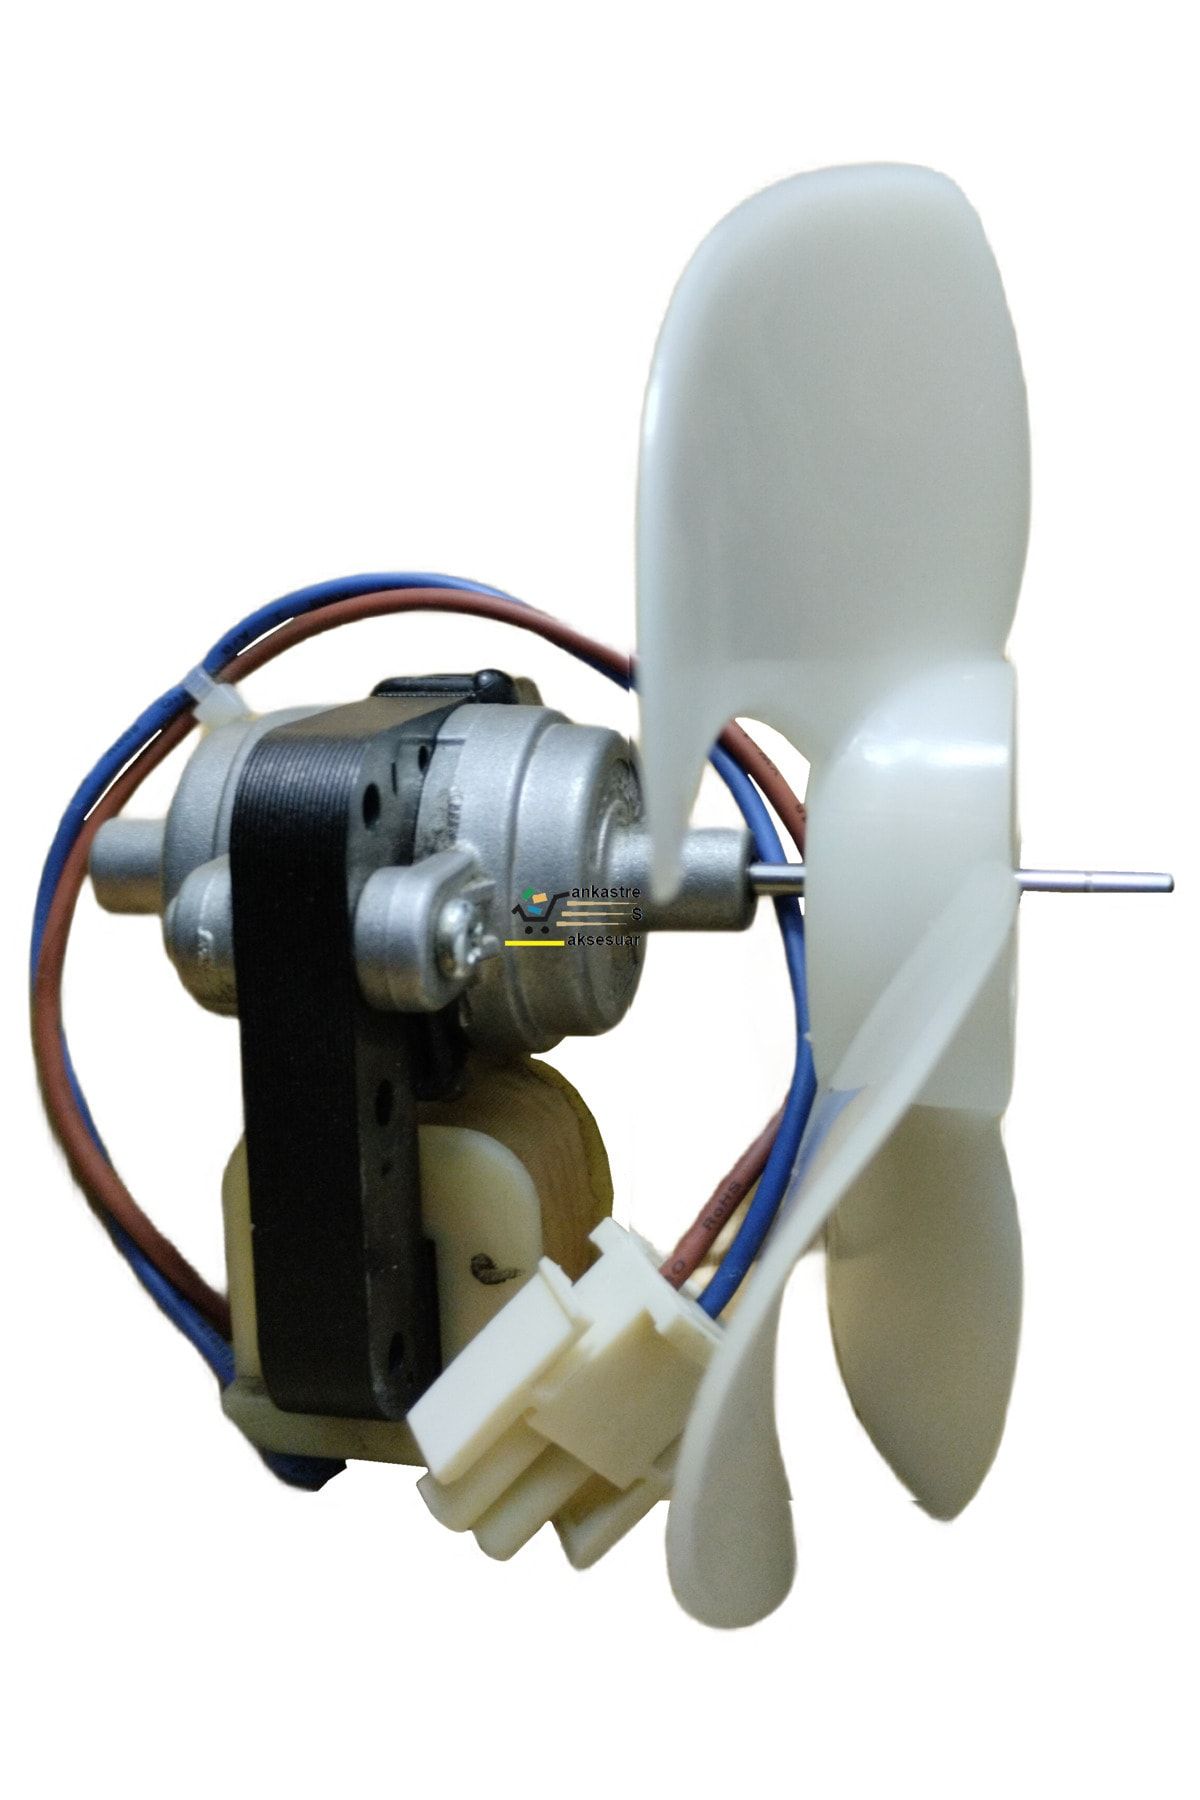 Arçelik AR 5194 NF (6014201000) Buzdolabı Motor Soğutma Fanı - Kompresör Fan Motoru Pervaneli